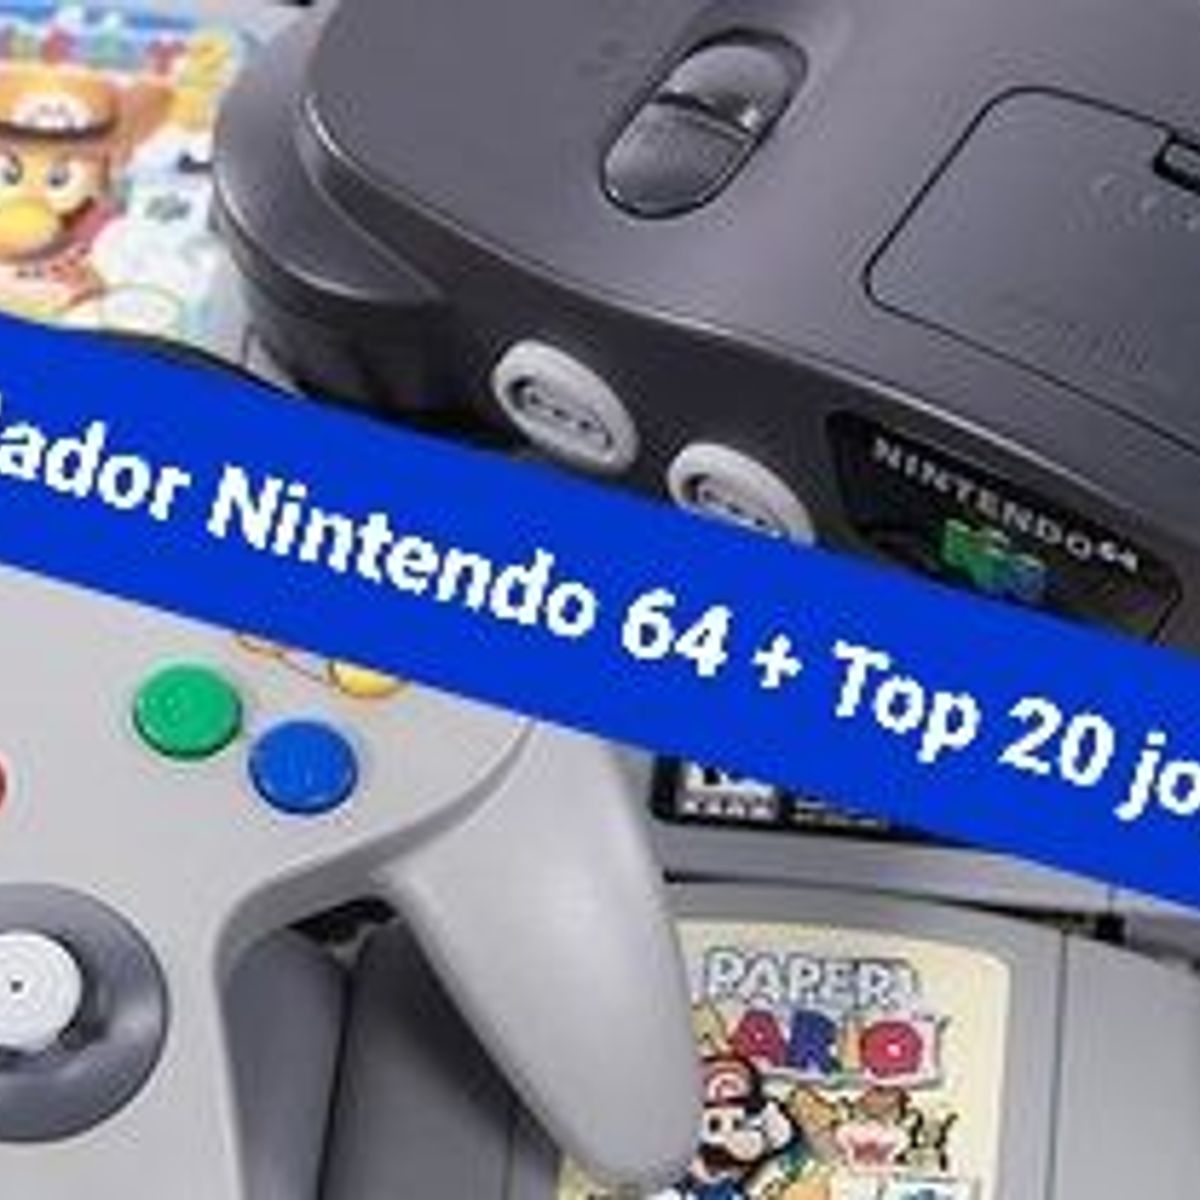 Nintendo 64, emuladores e jogos inesquecíveis